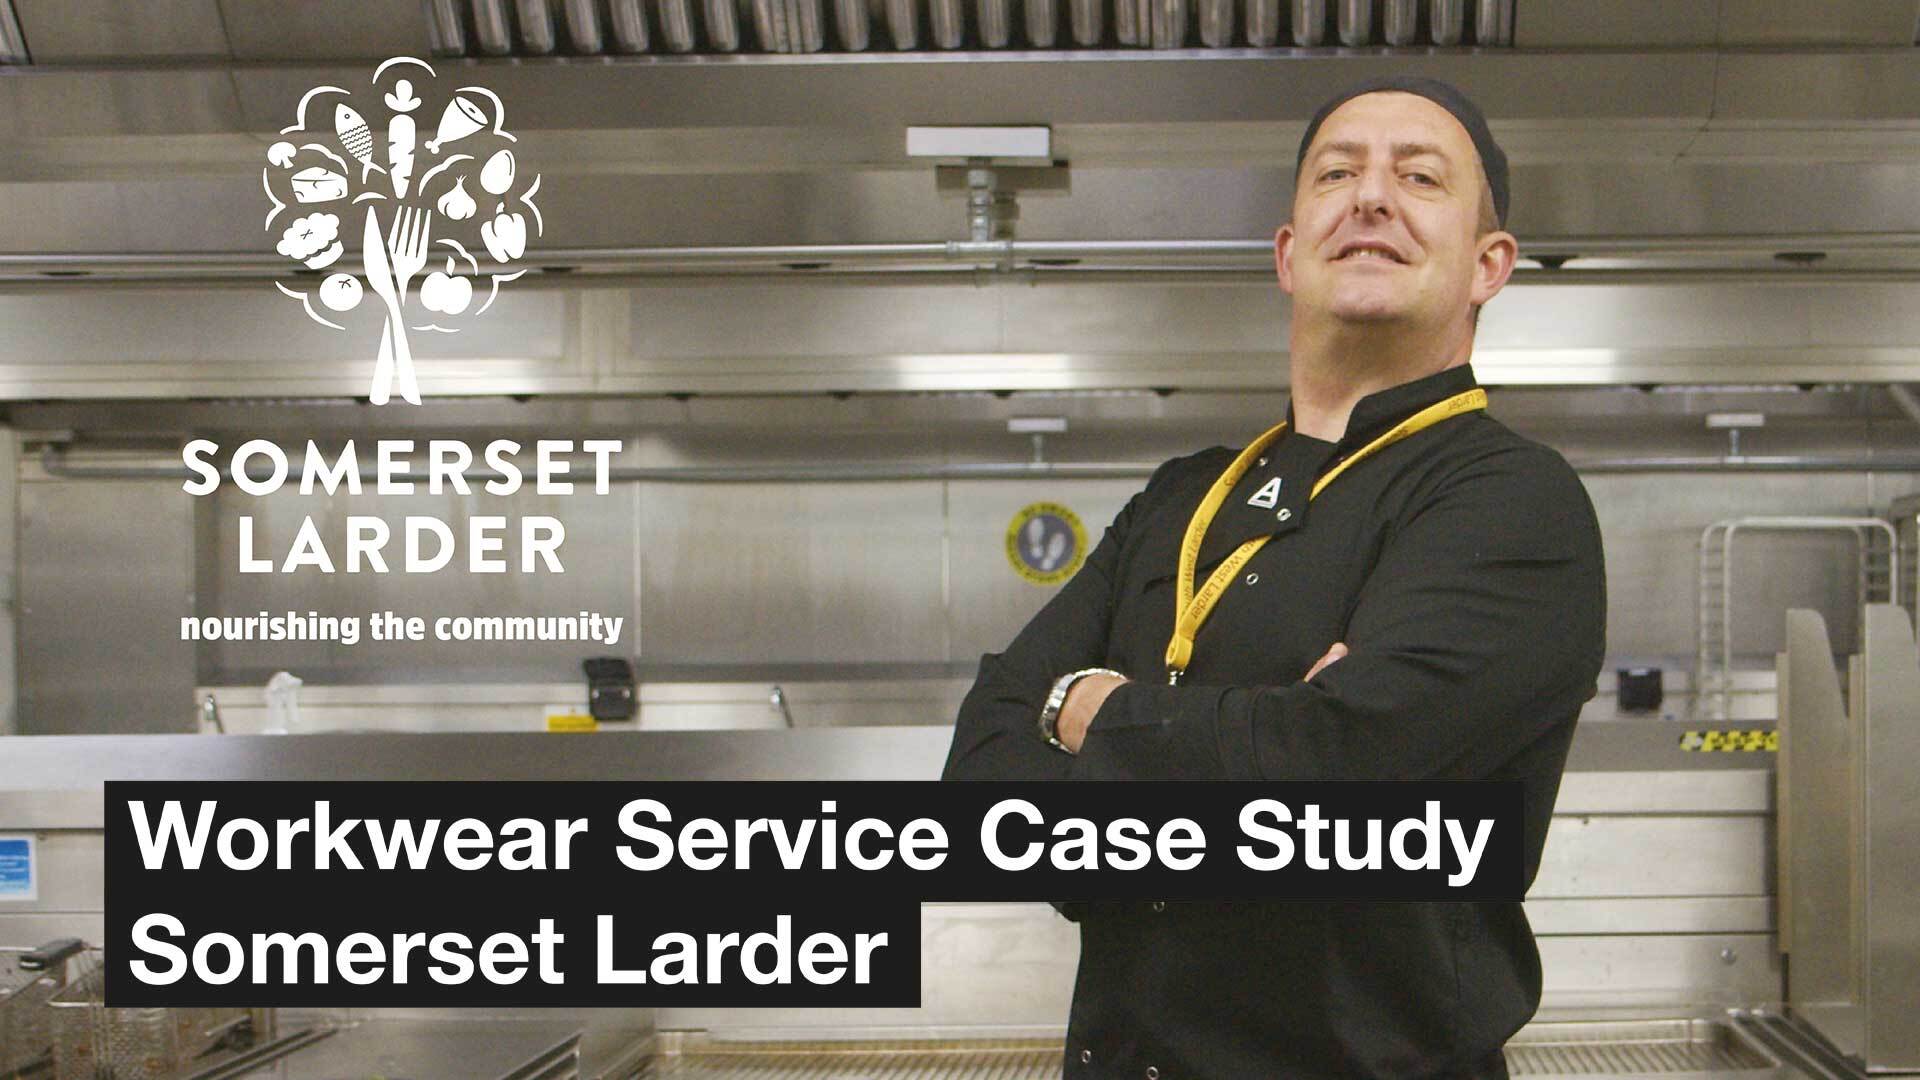 Somerset Larder - Workwear Service Case Study - News - CLEAN Services